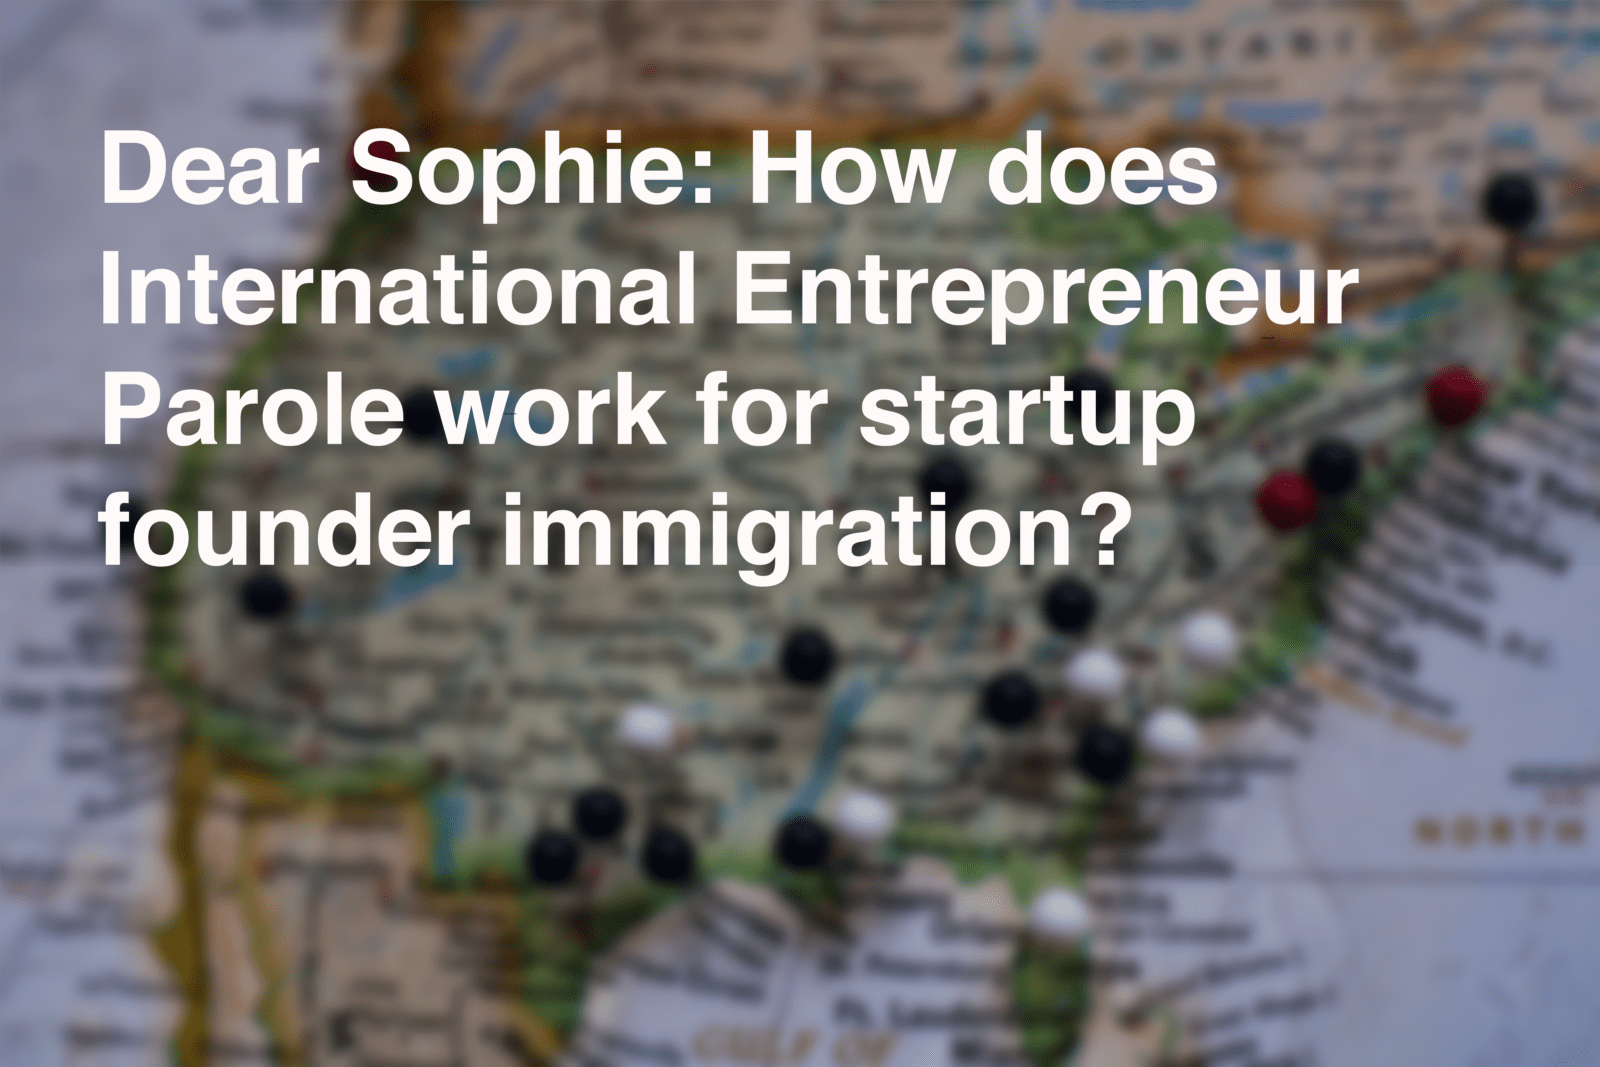 International Entrepreneur Parole for startup founder immigration